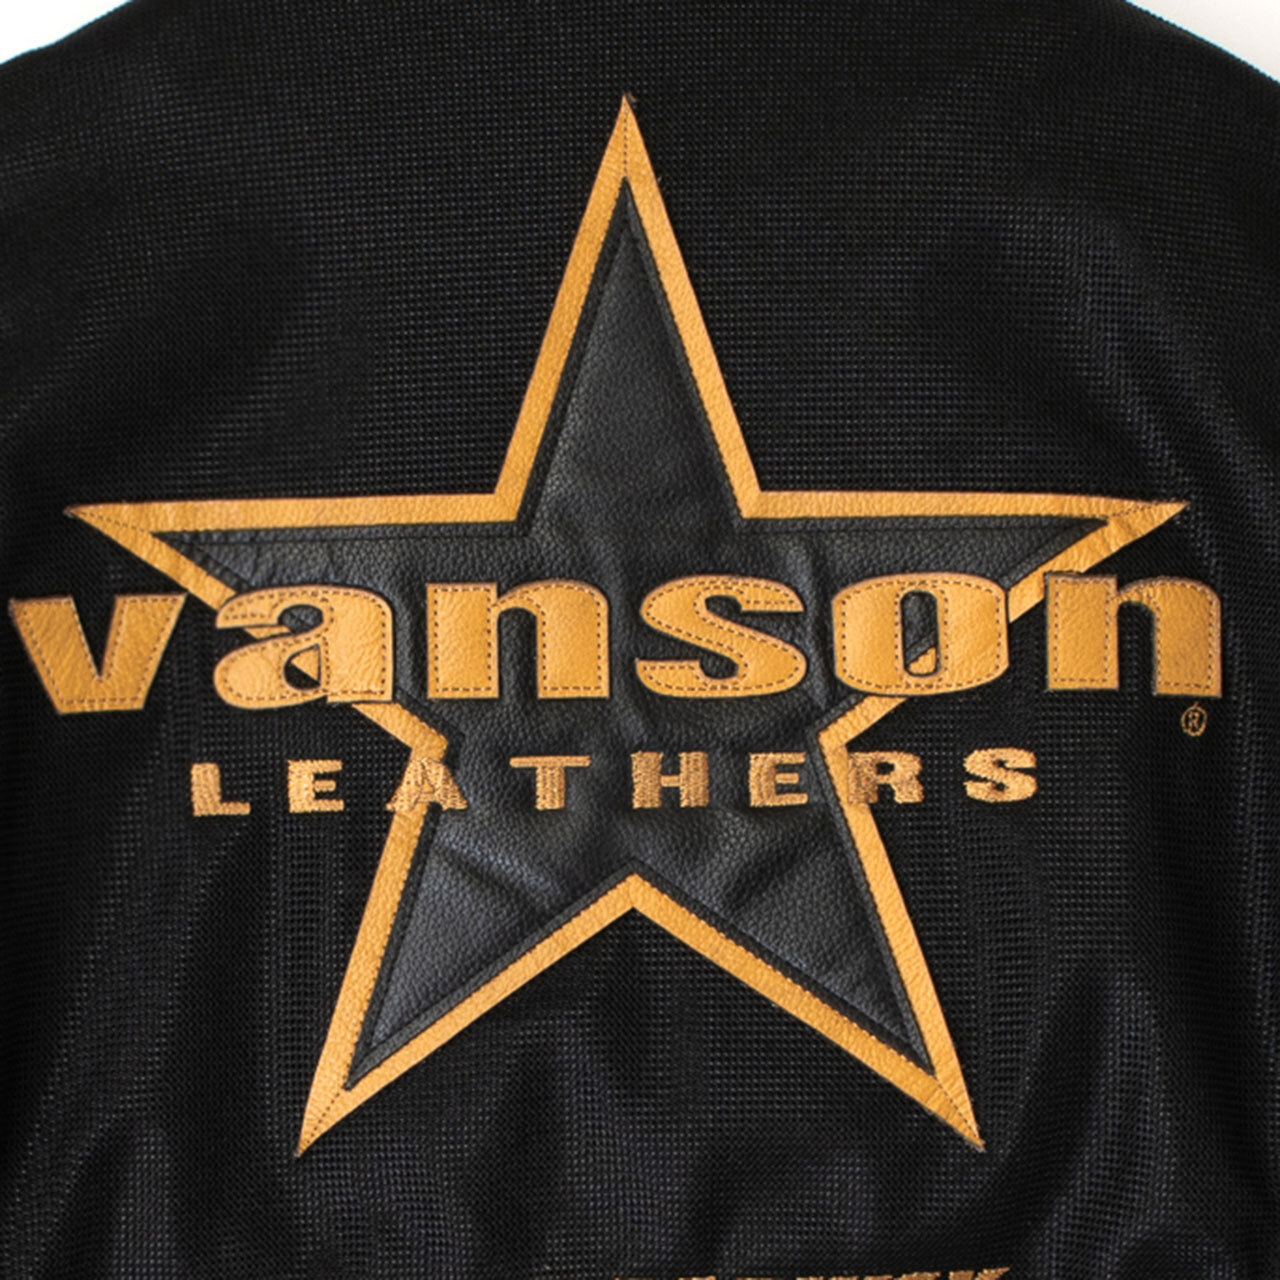 背中のワンスターは本革仕様、vansonは本革切り文字。